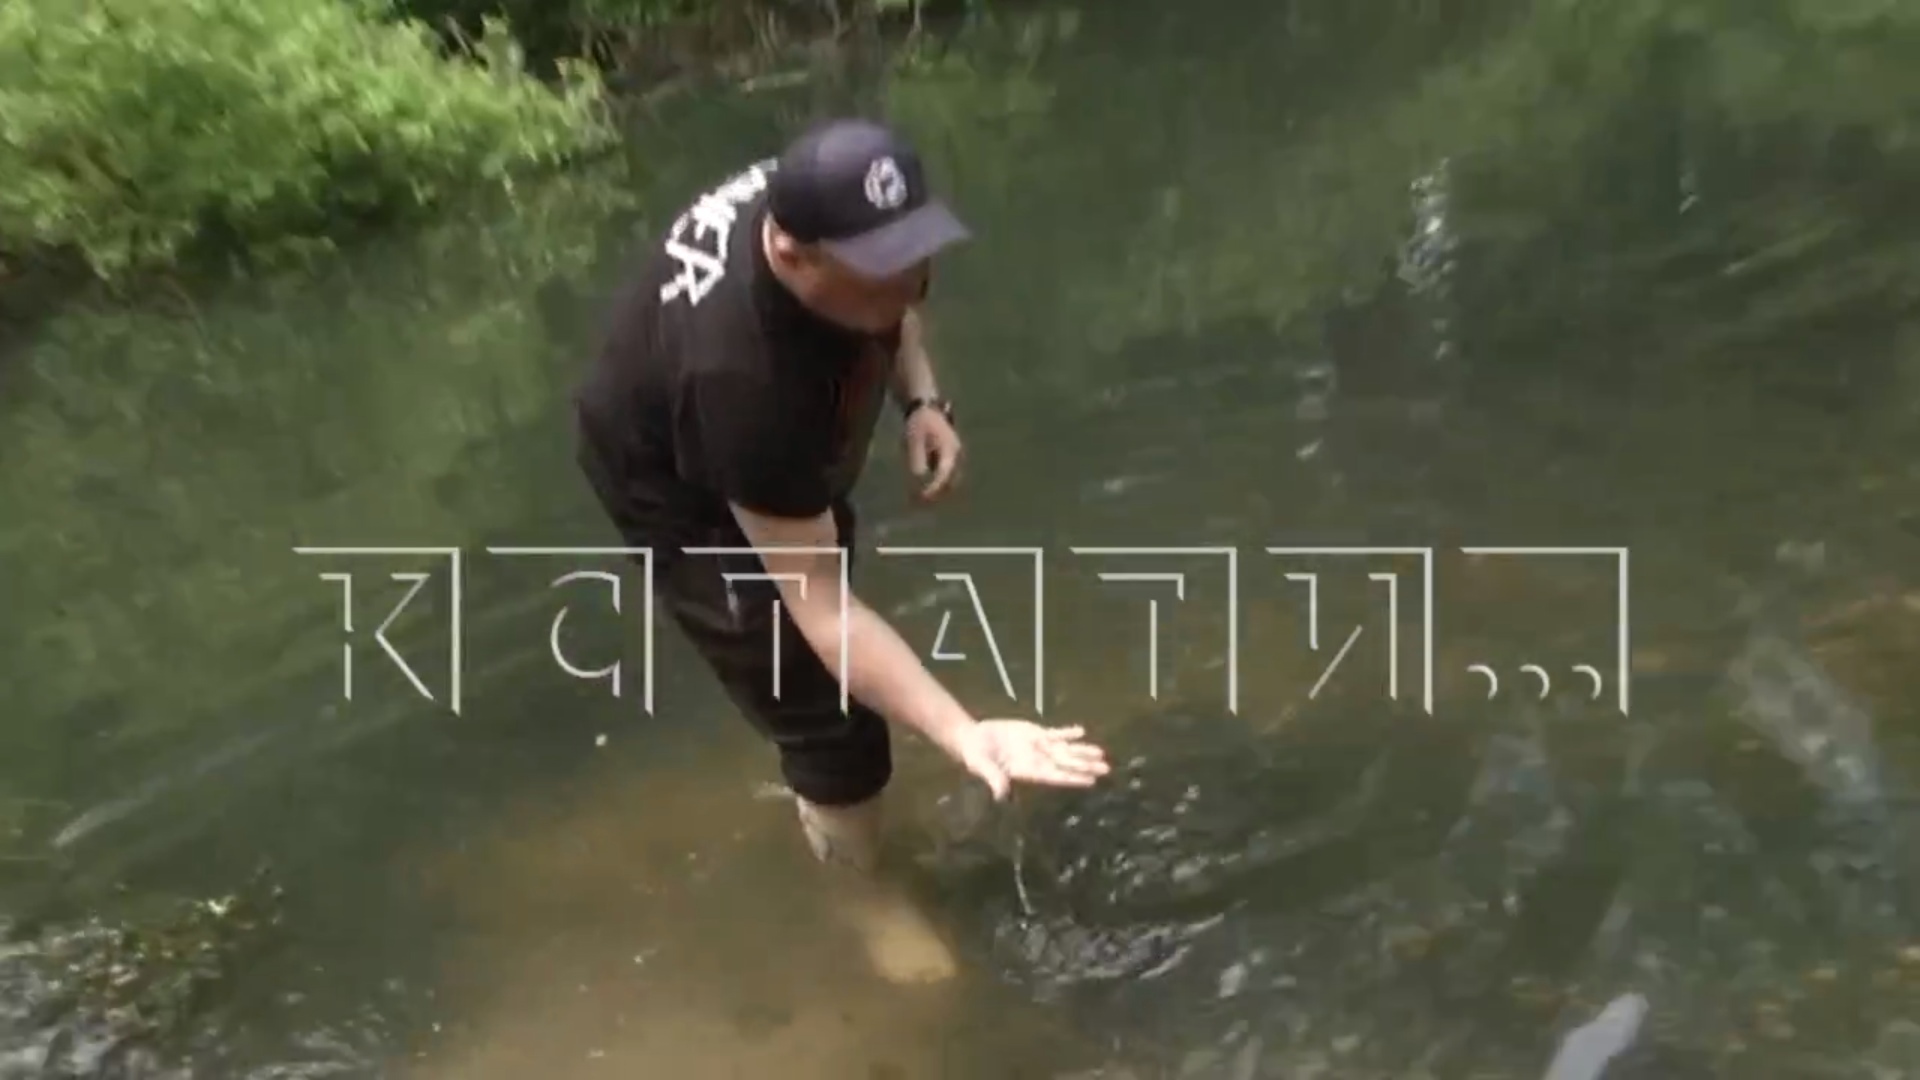 Жители поселка Сатис жалуются на состояние реки: "Рыба гибнет, пахнет канализацией"